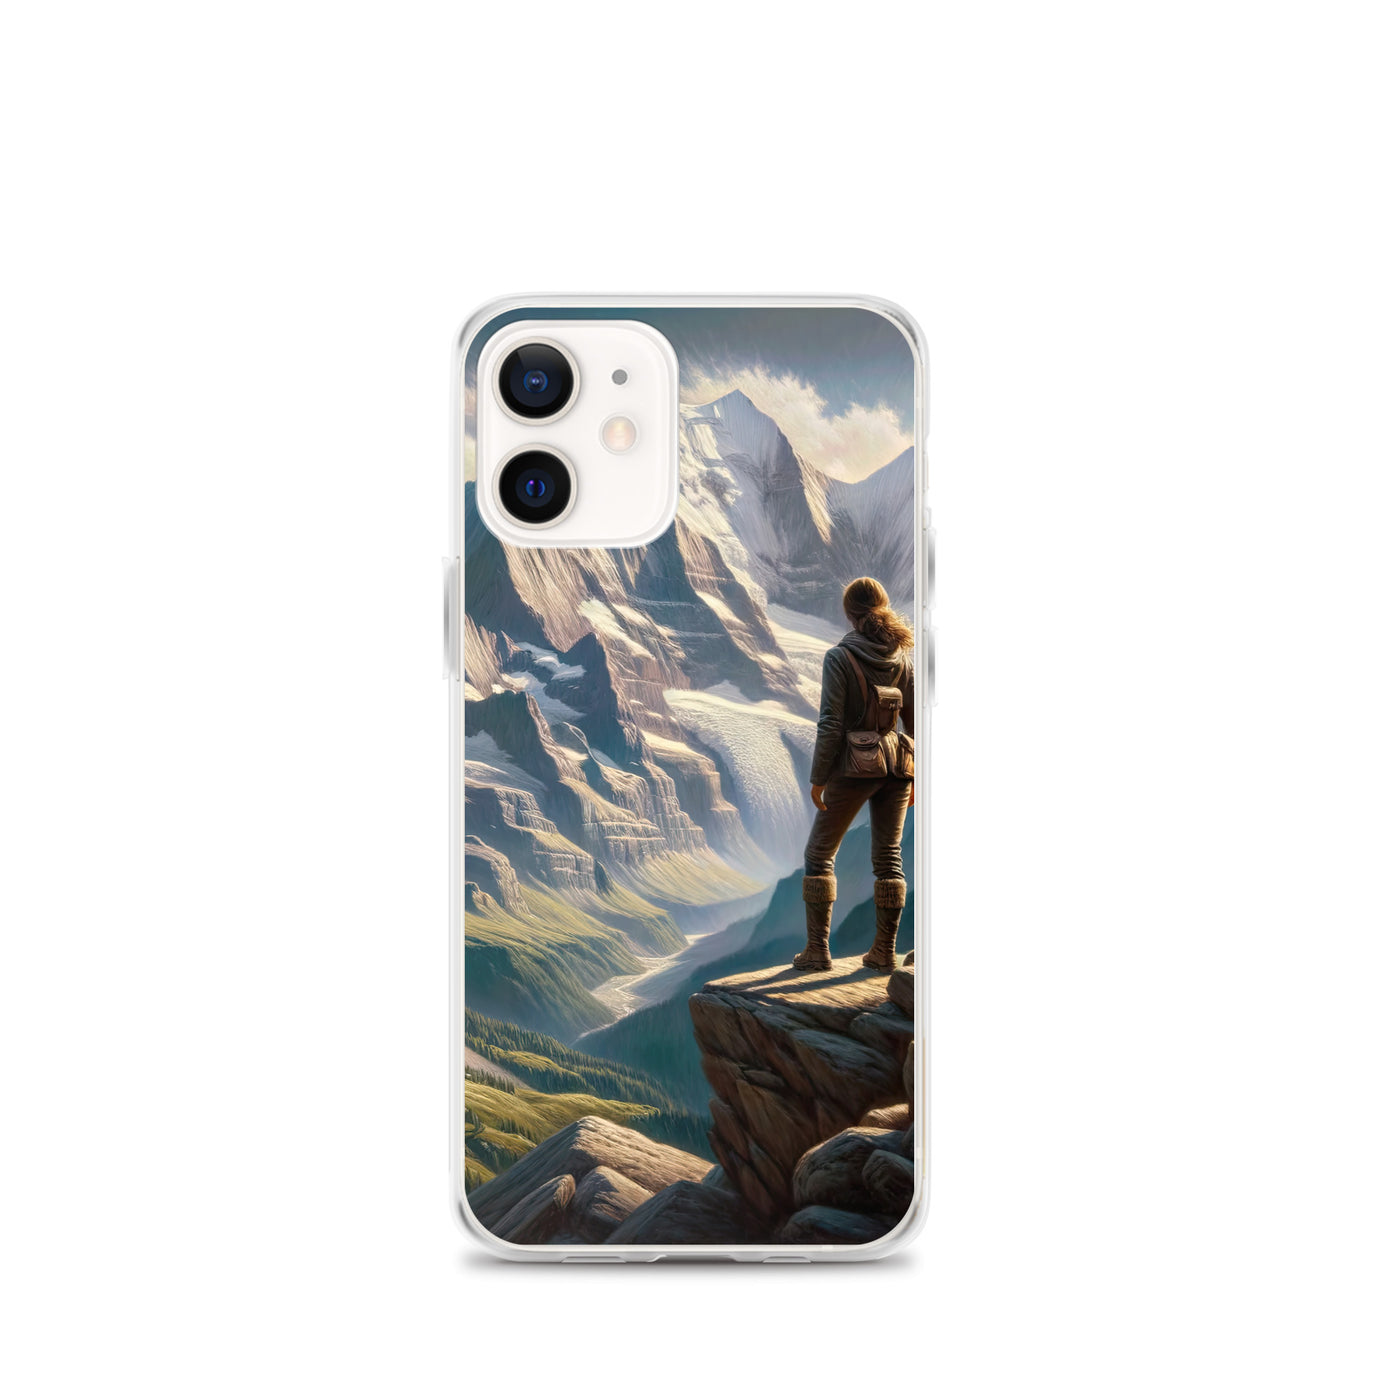 Ölgemälde der Alpengipfel mit Schweizer Abenteurerin auf Felsvorsprung - iPhone Schutzhülle (durchsichtig) wandern xxx yyy zzz iPhone 12 mini